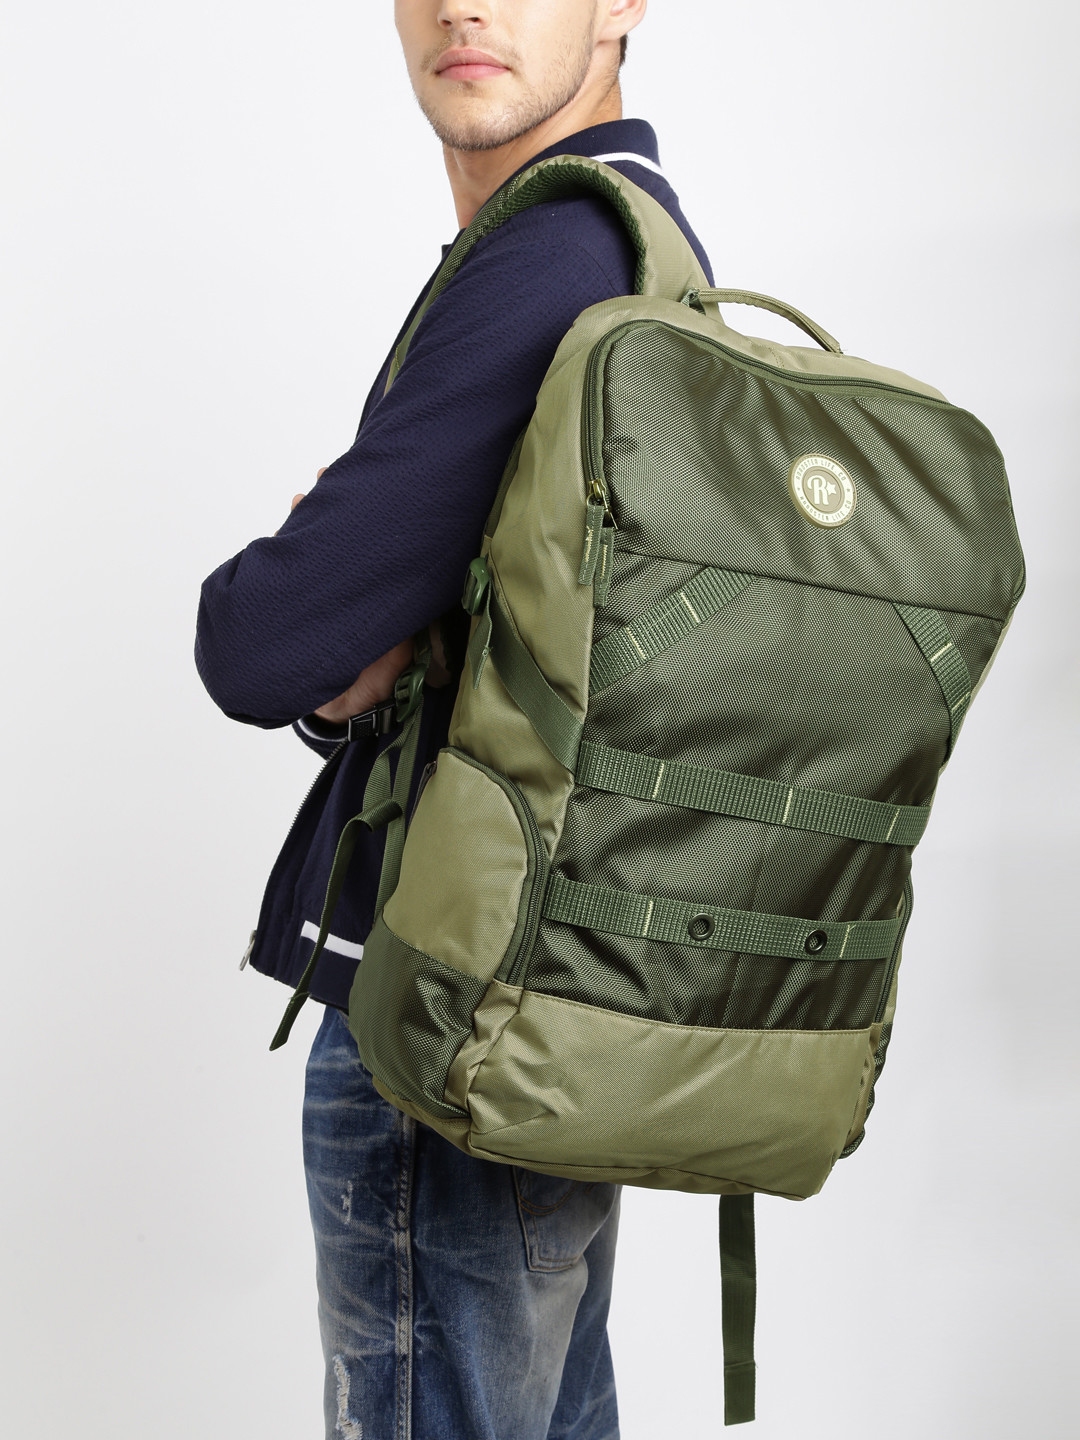 Buy Roadster Unisex Olive Green Tall Knapsack Backpack - Backpacks for